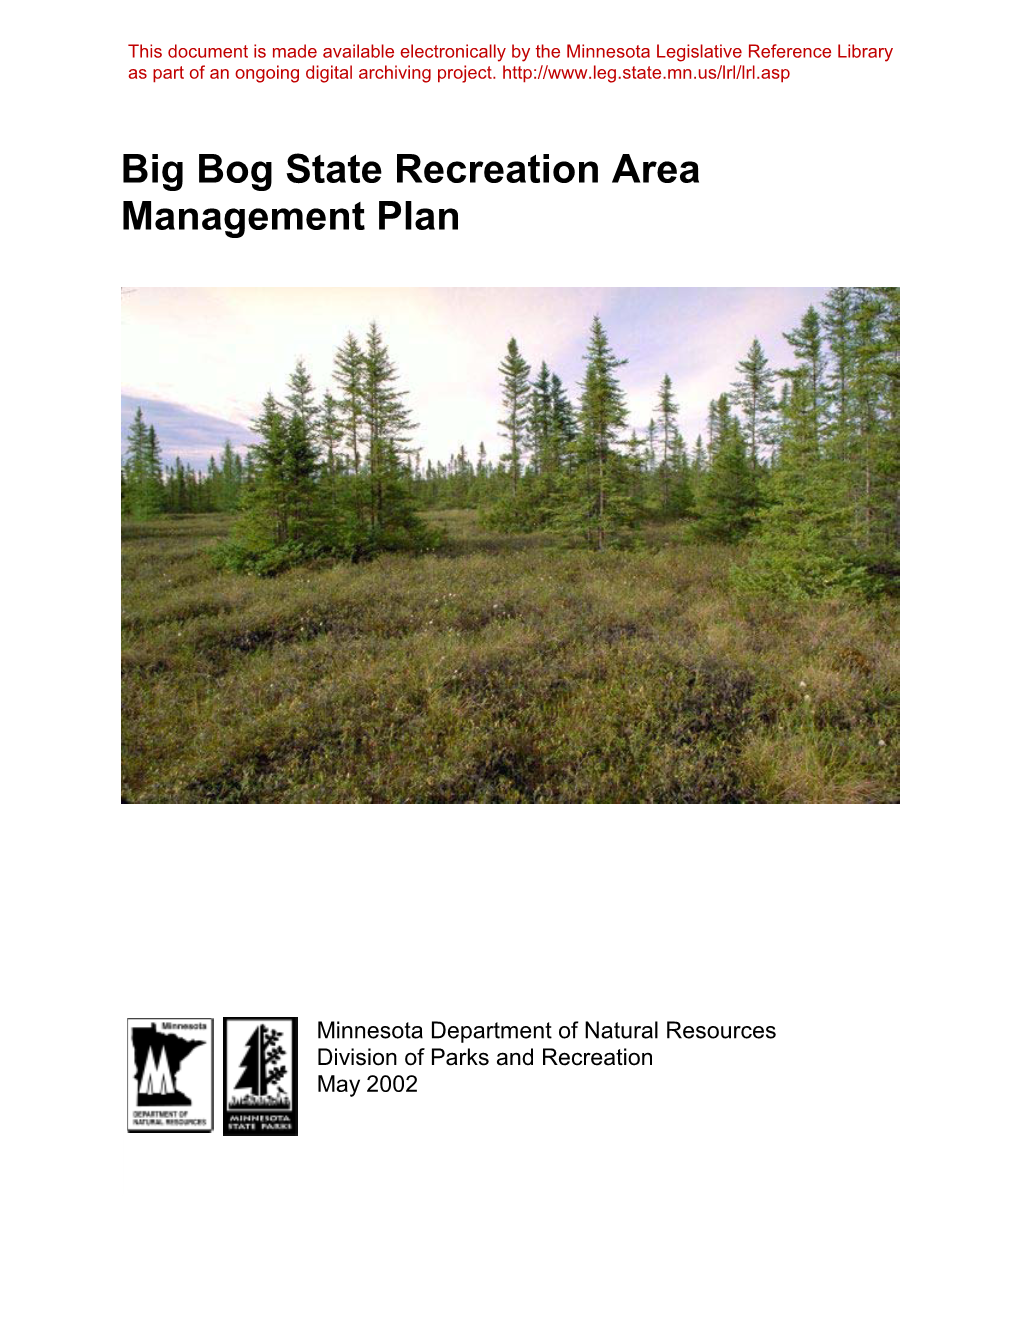 Big Bog State Recreation Area Management Plan